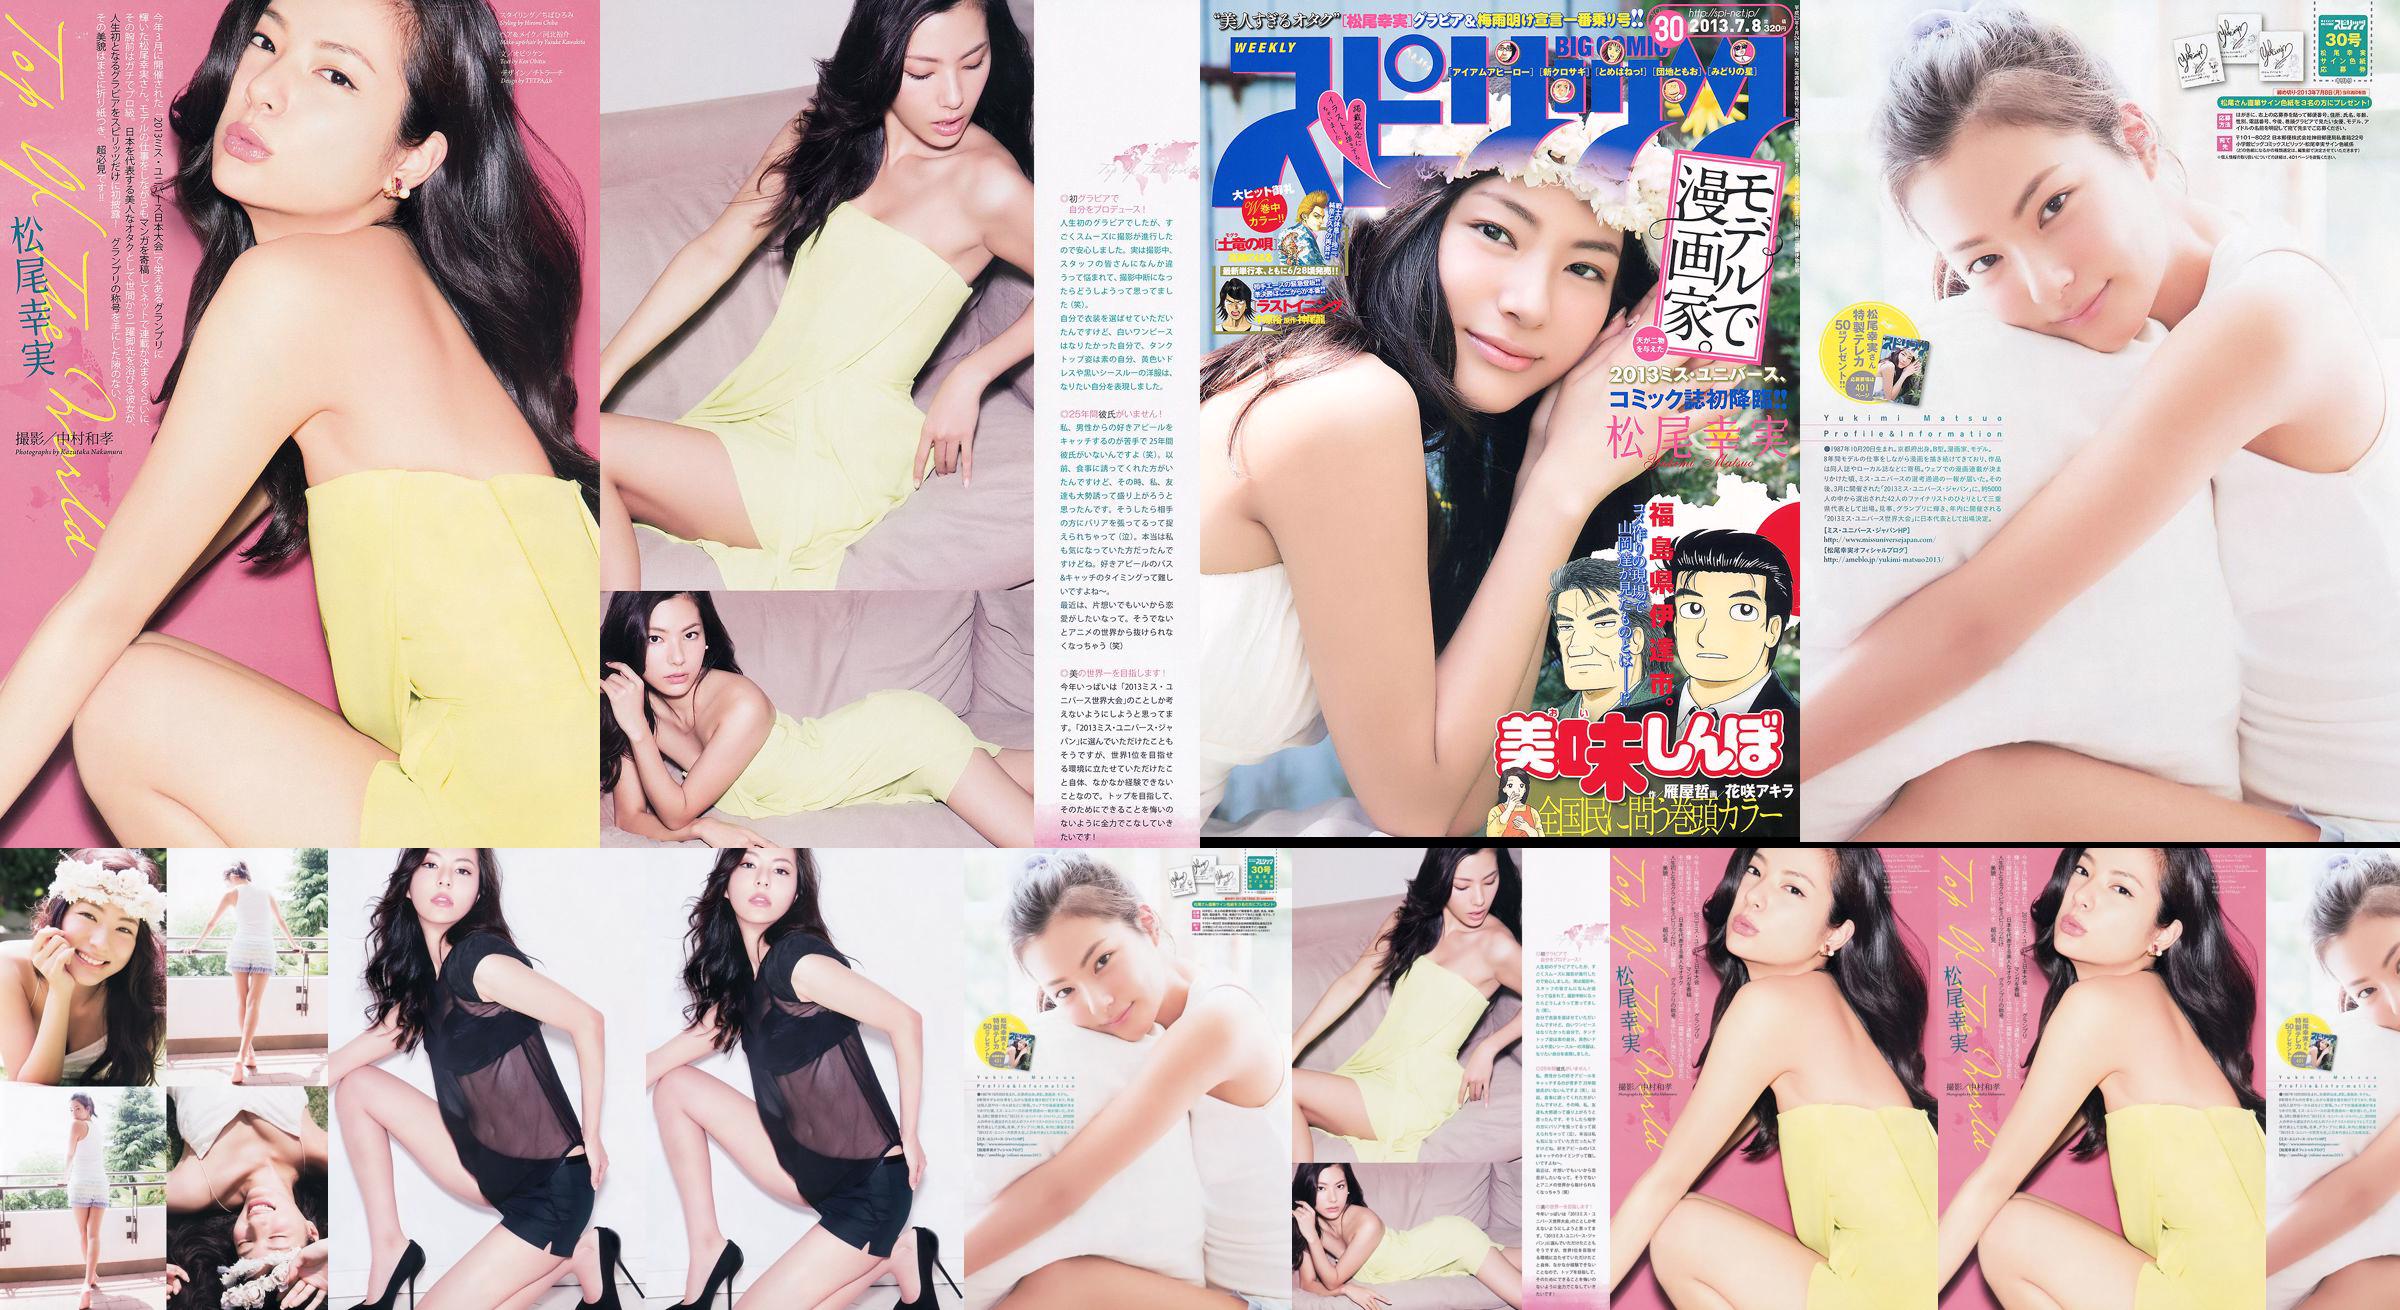 [Weekly Big Comic Spirits] Komi Matsuo 2013 No.30 Photo Magazine No.208a7e Page 2